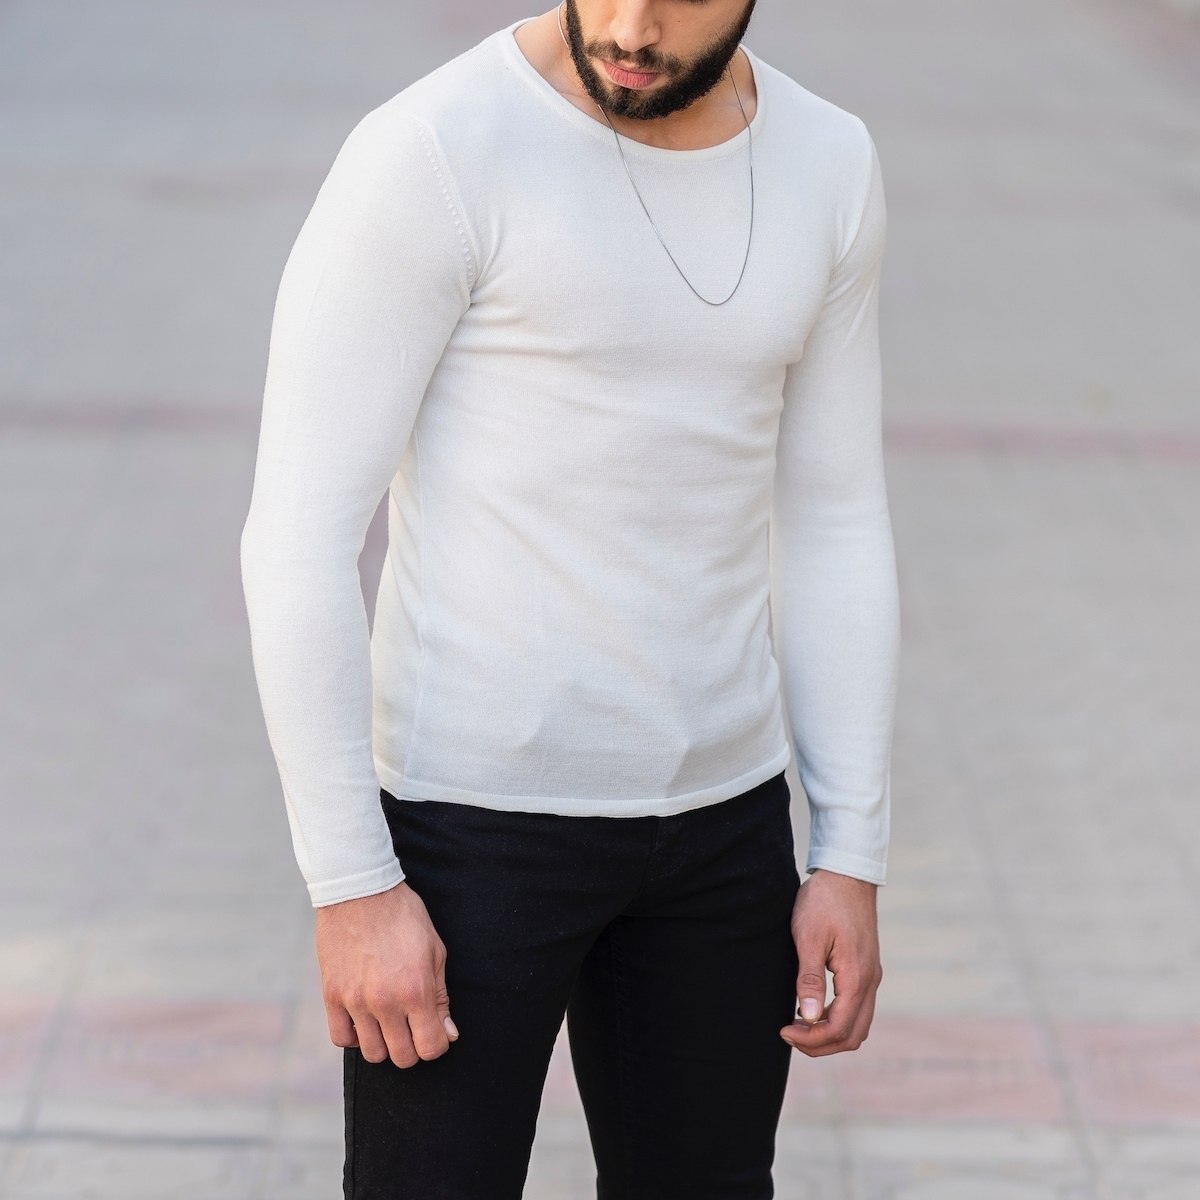 Herren Slim-Fit Sweater mit rundem Kragen in weiß - 3